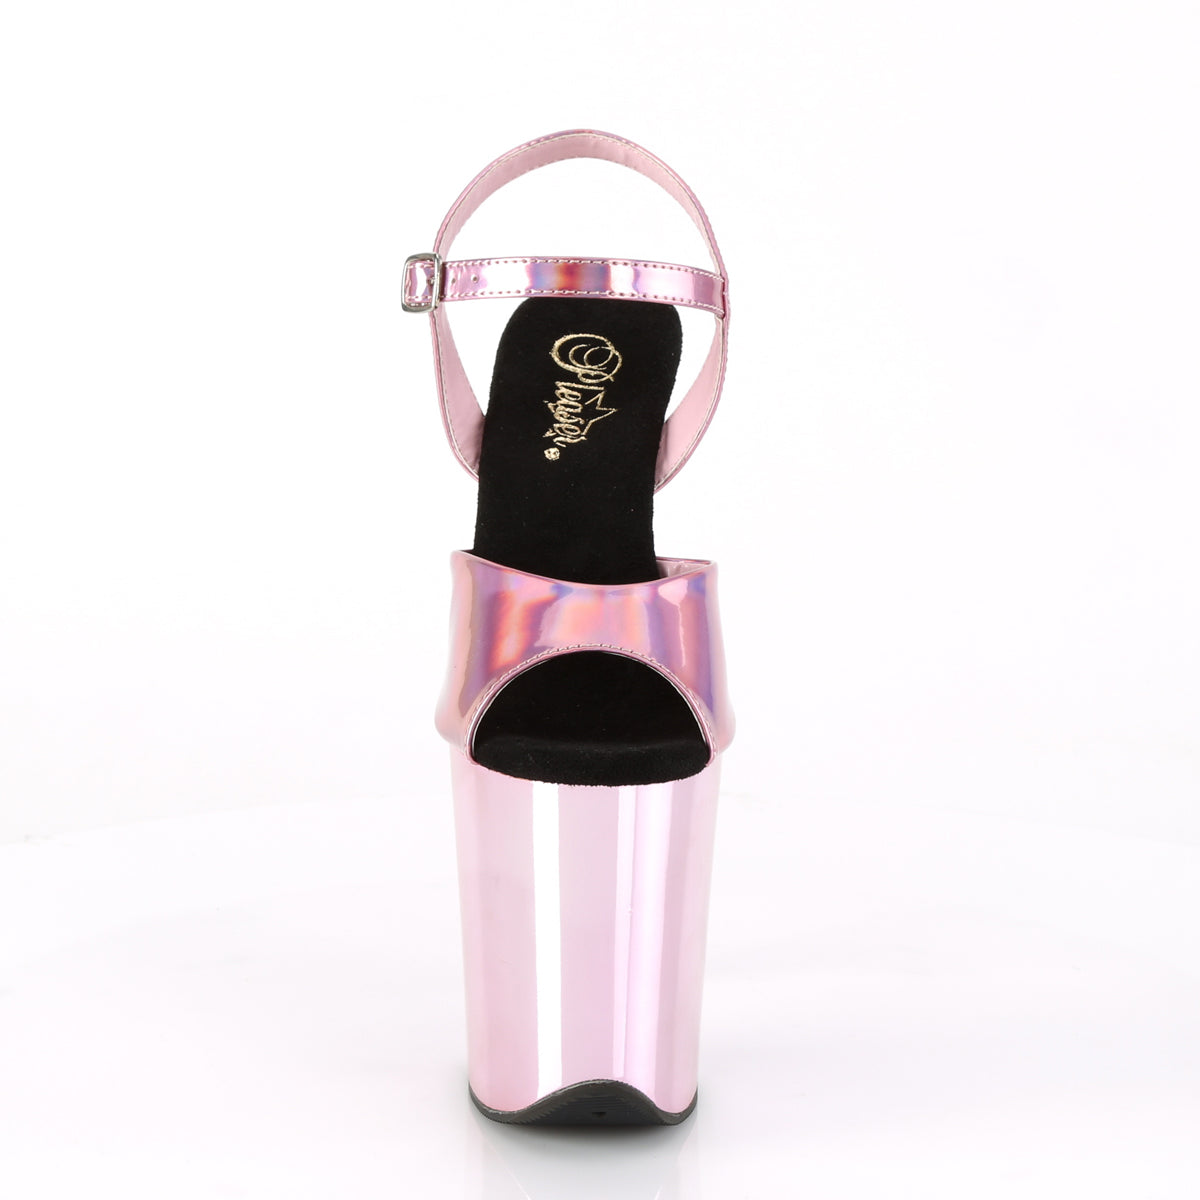 FLAMINGO-809HG Baby Pink Hologram/Baby Pink Chrome Platform Sandal Pleaser